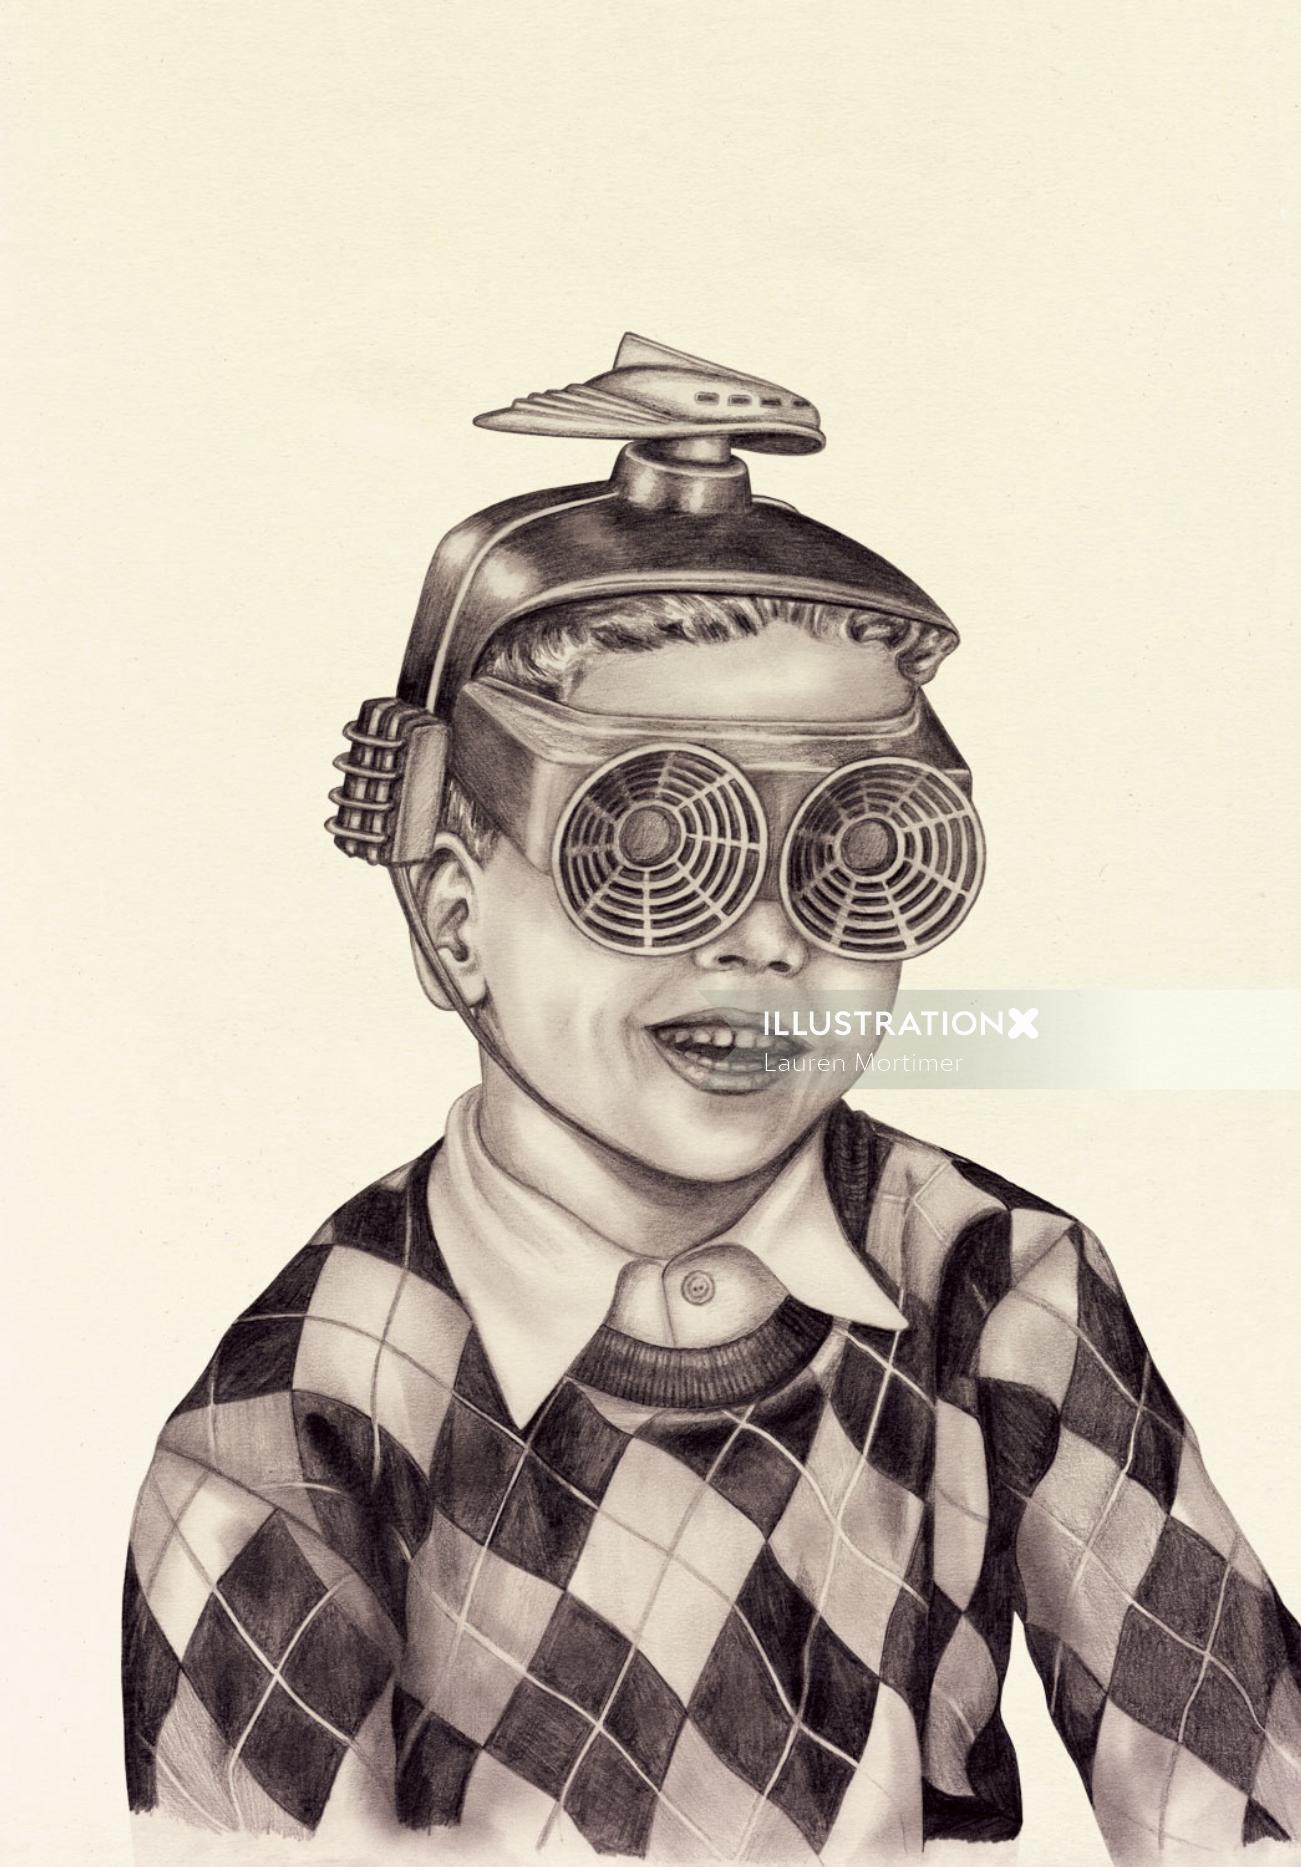 Boy with Rador goggles
